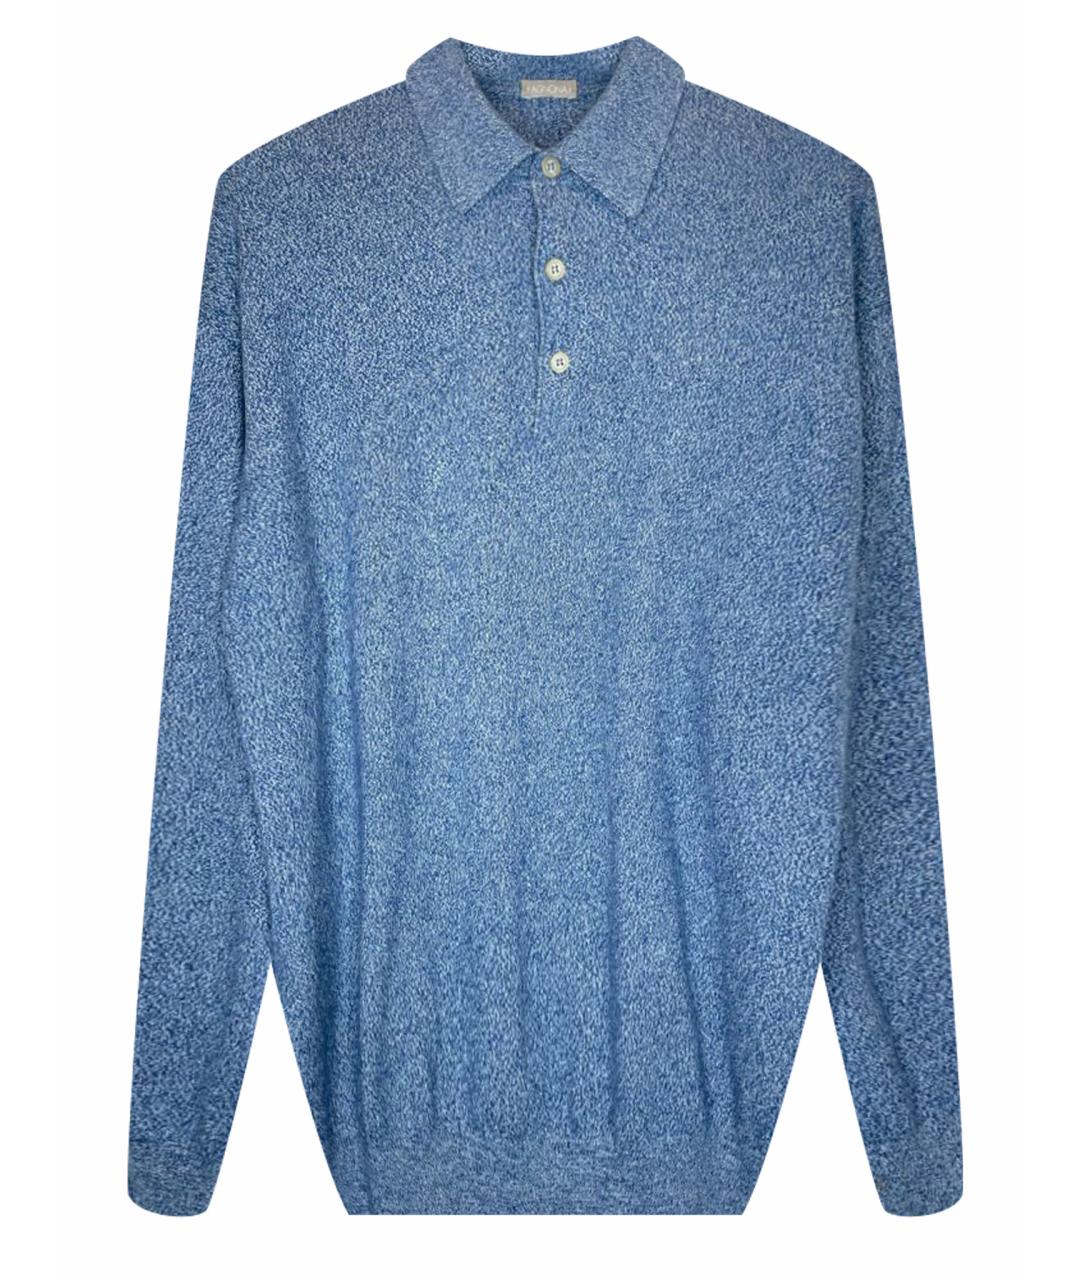 AGNONA Голубой кашемировый джемпер / свитер, фото 1